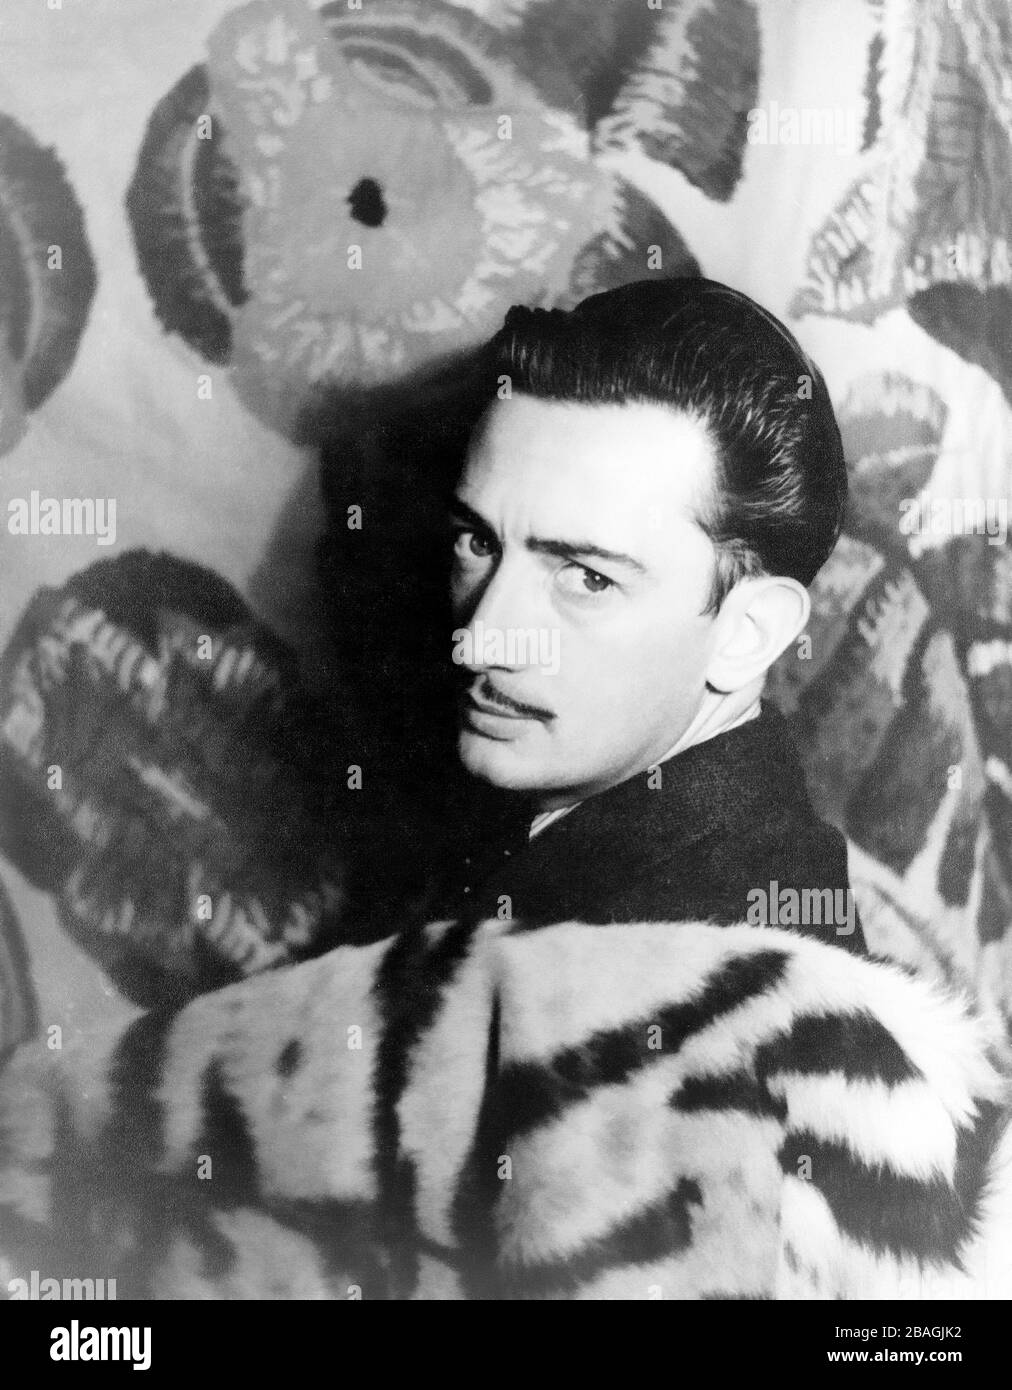 Salvador Dalí (1904 – 1989) artiste surréaliste espagnol Banque D'Images